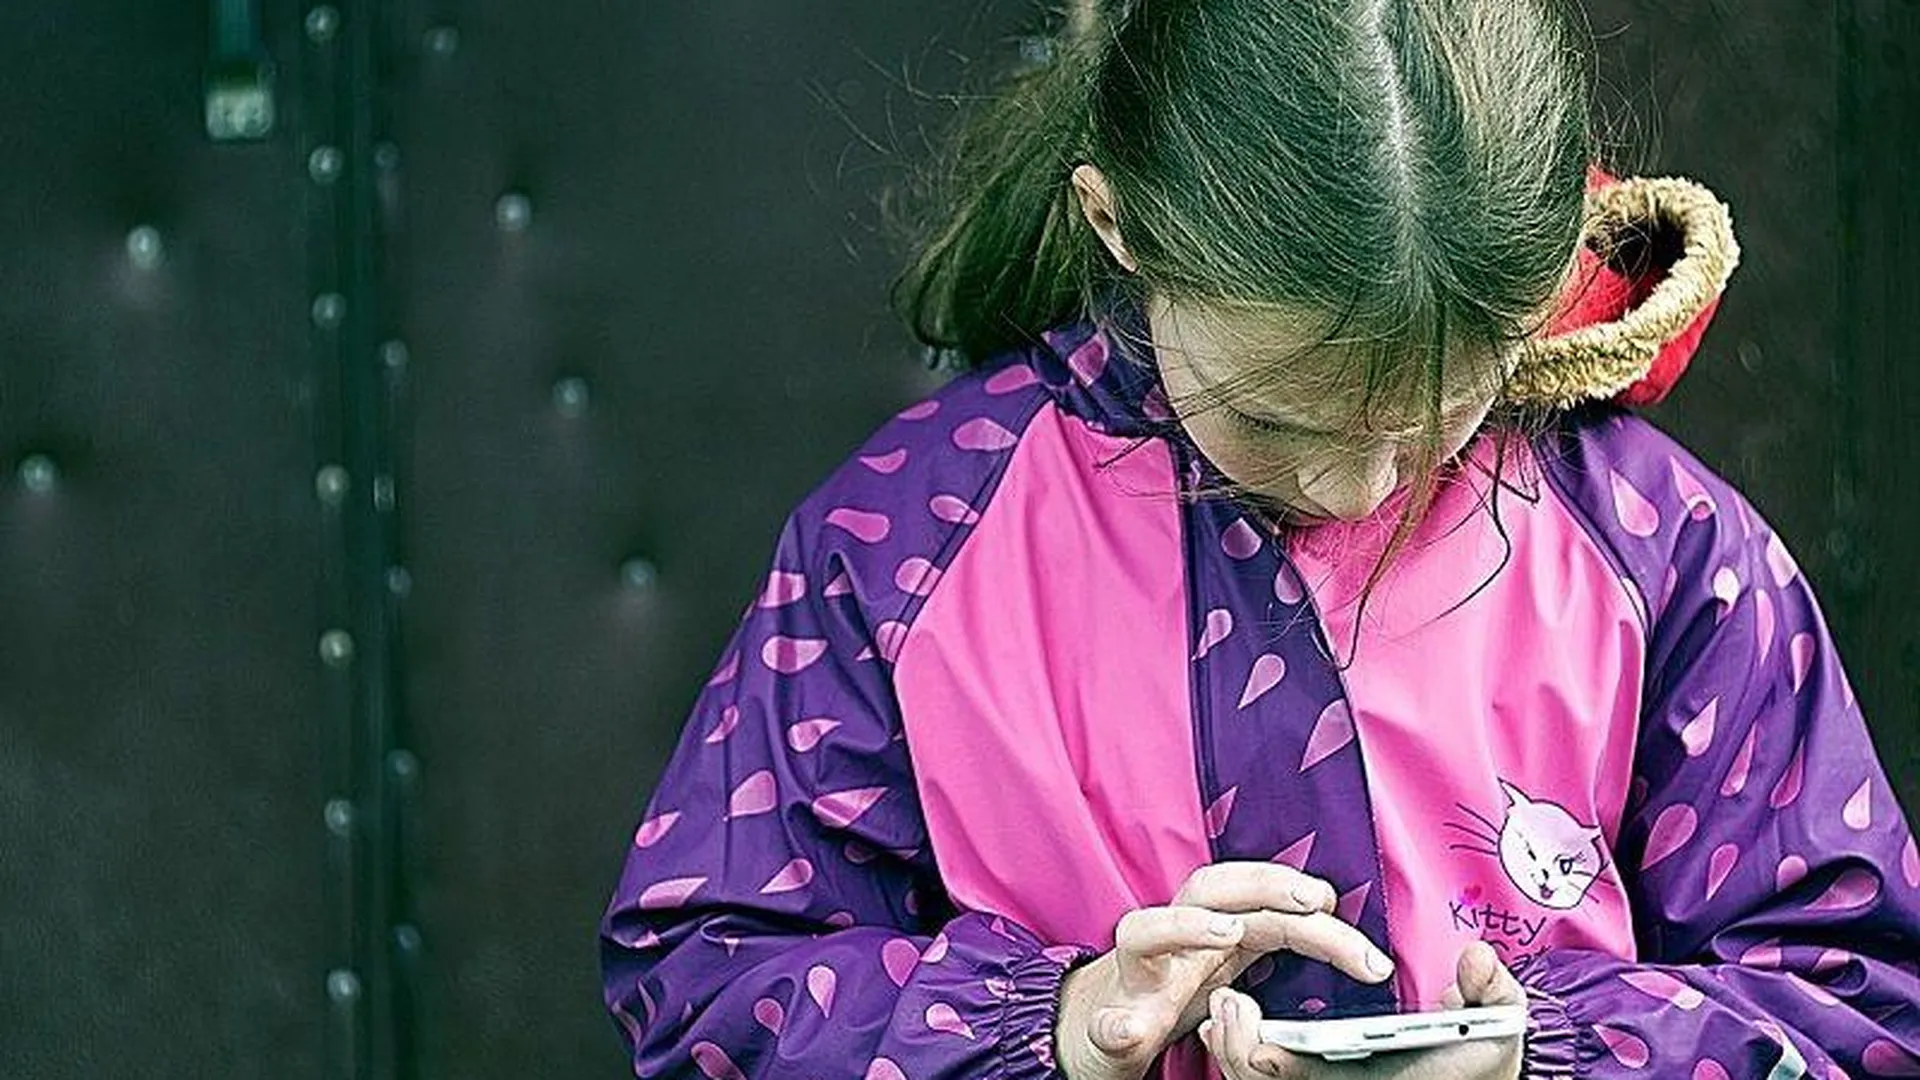 Карманницы стащили мобильник у 10-летней девочки в магазине Балашихи